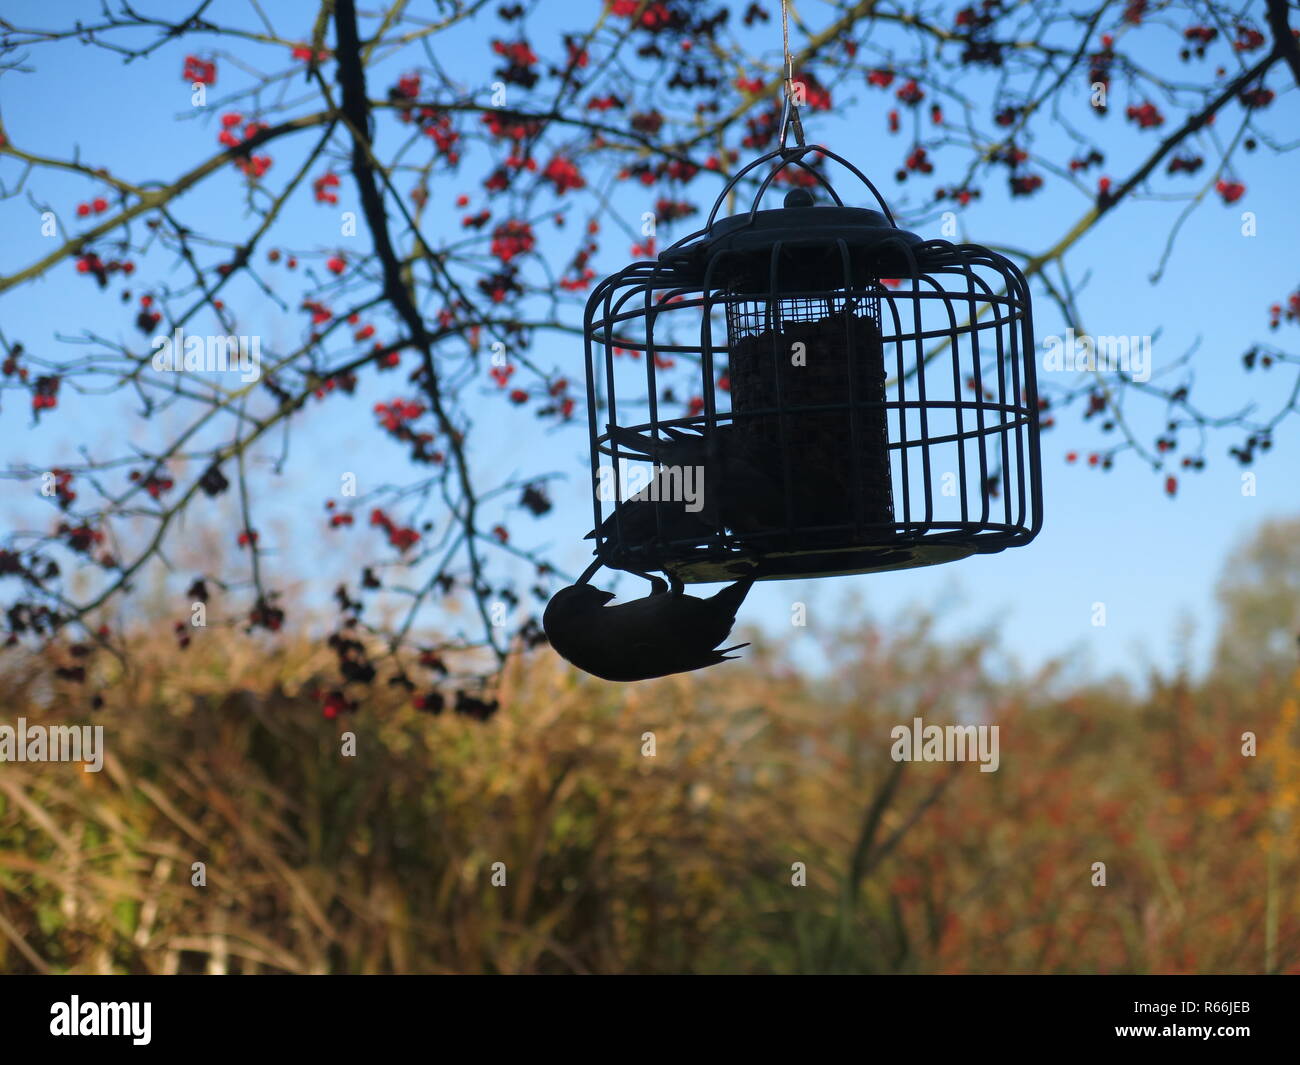 Vögel füttern in einem käfig vogel - Schrägförderer hängen in einem Baum, gegen den Nachmittag winter Sonnenschein Silhouette; Barnsdale Gärten, Rutland Stockfoto